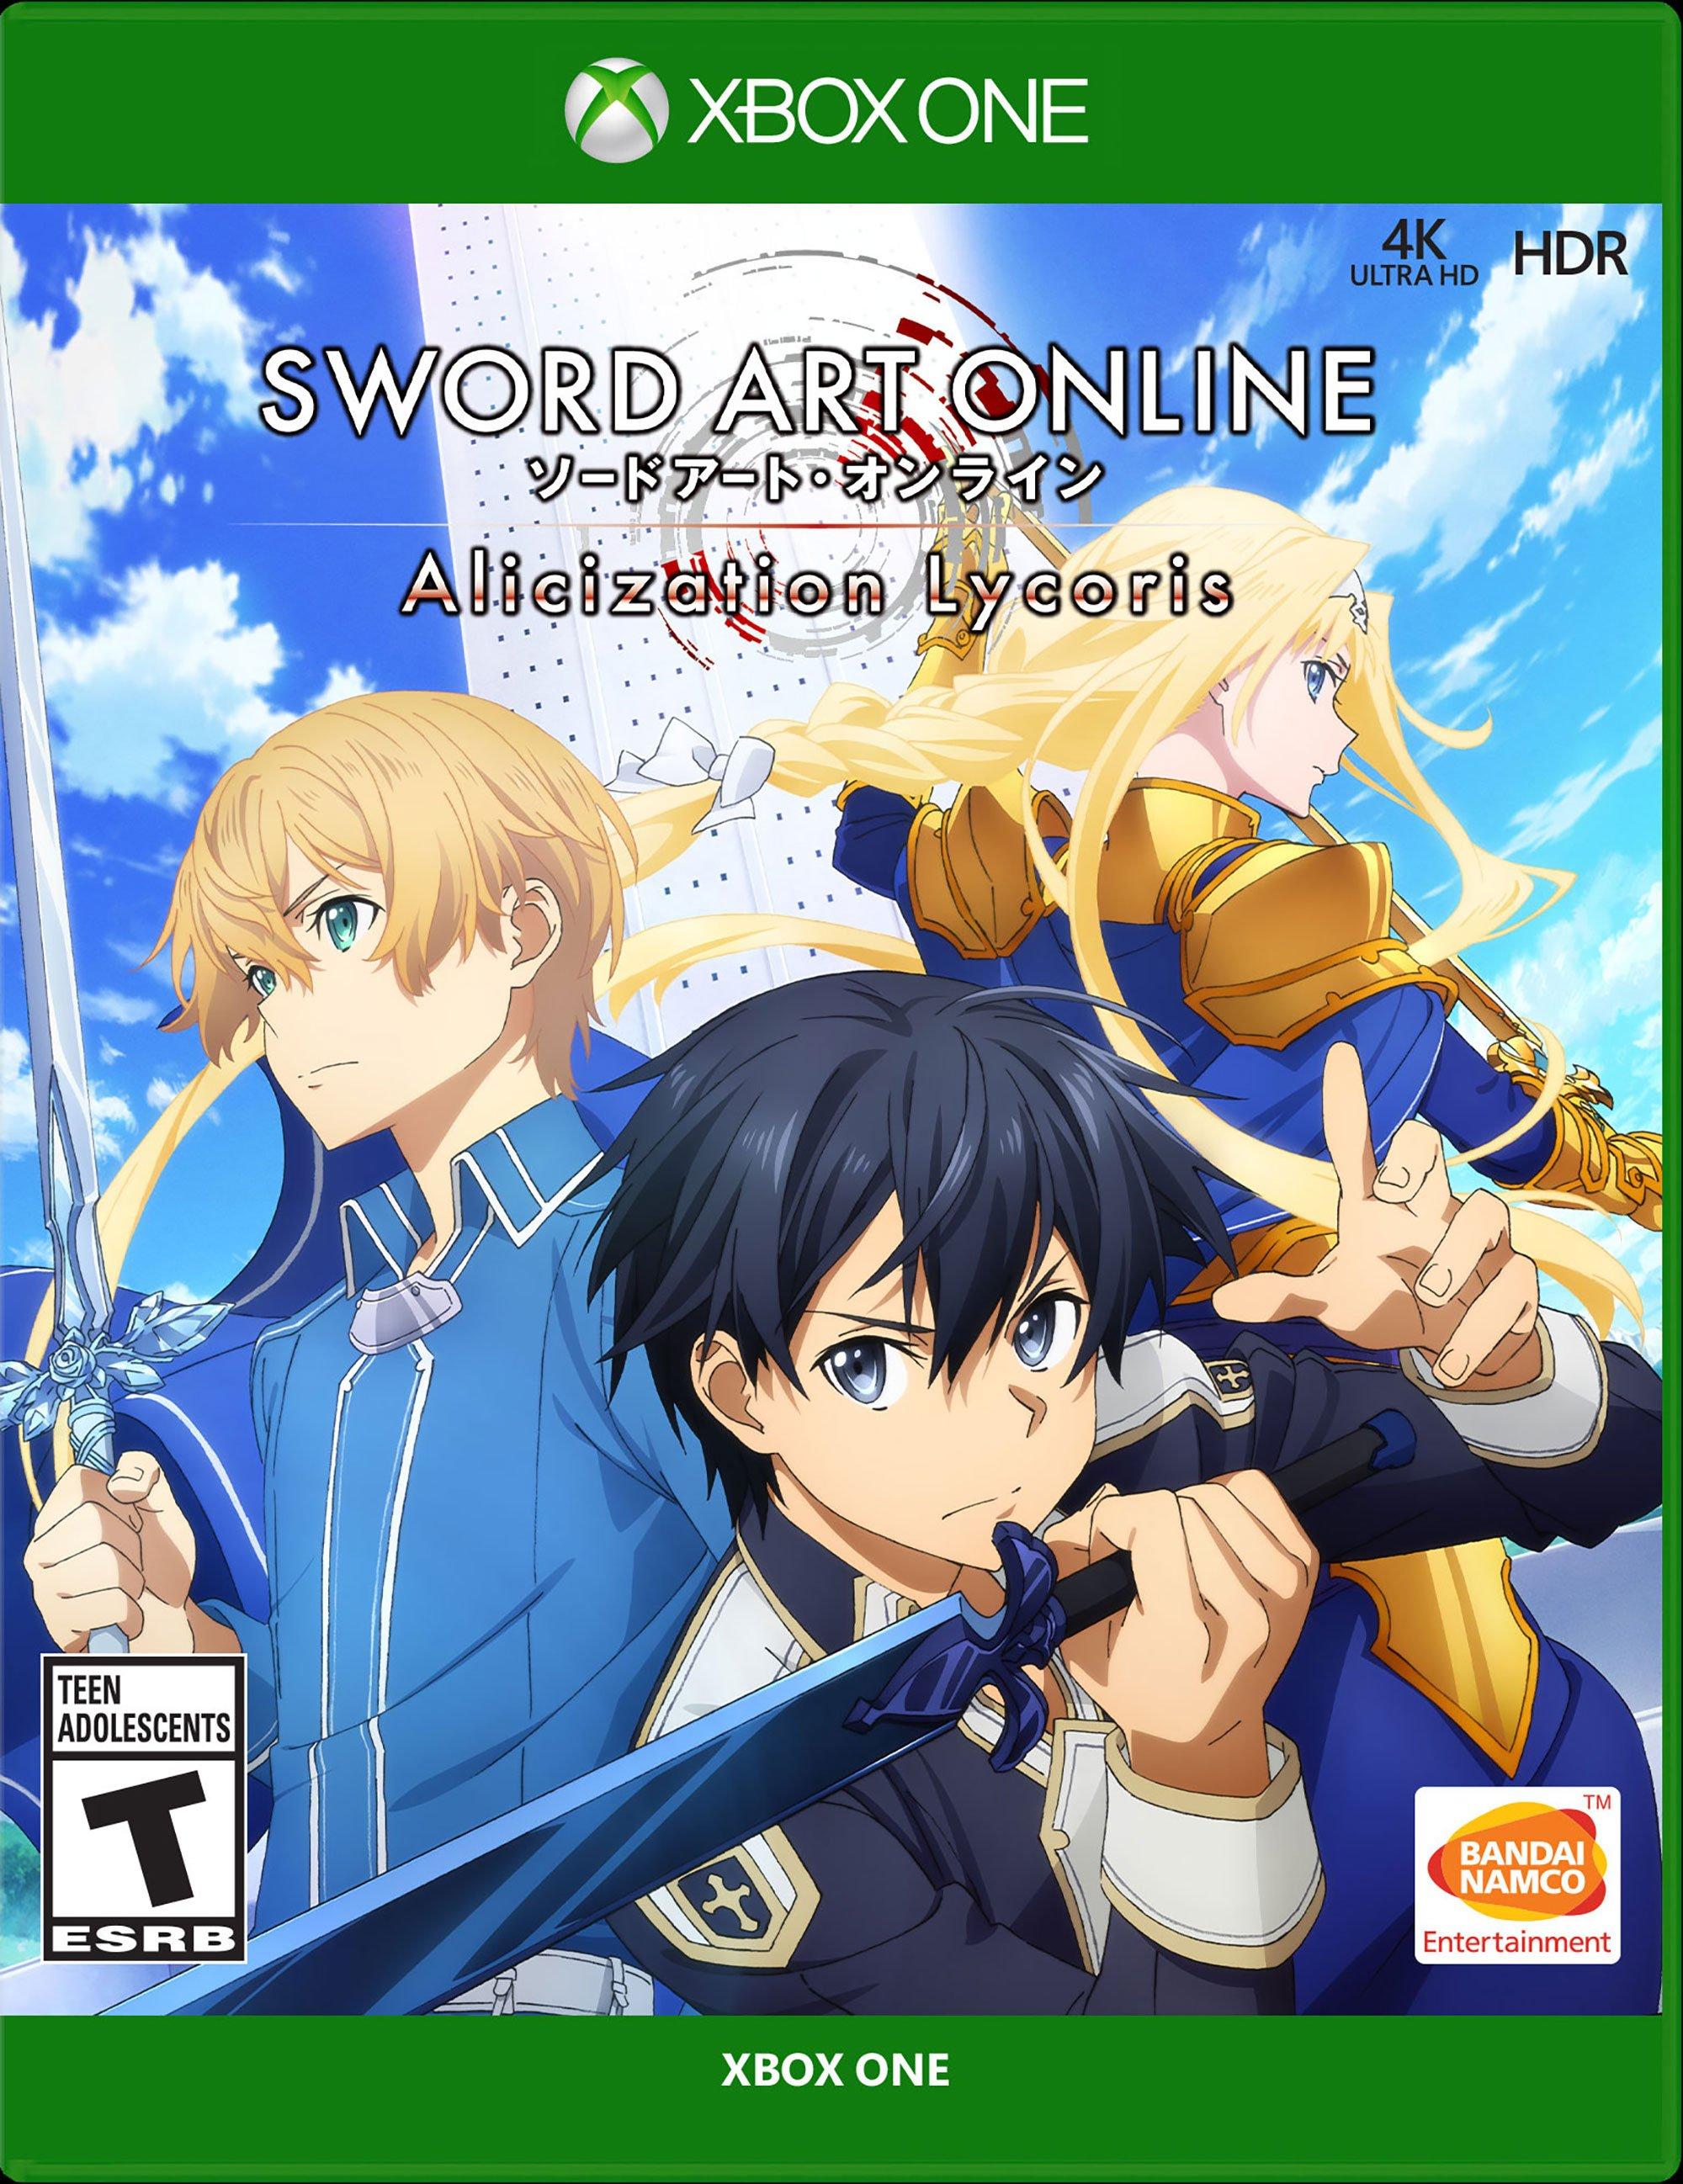 Finally A Sword Art Online ROBLOX Game!!! (Bitazai Online) 